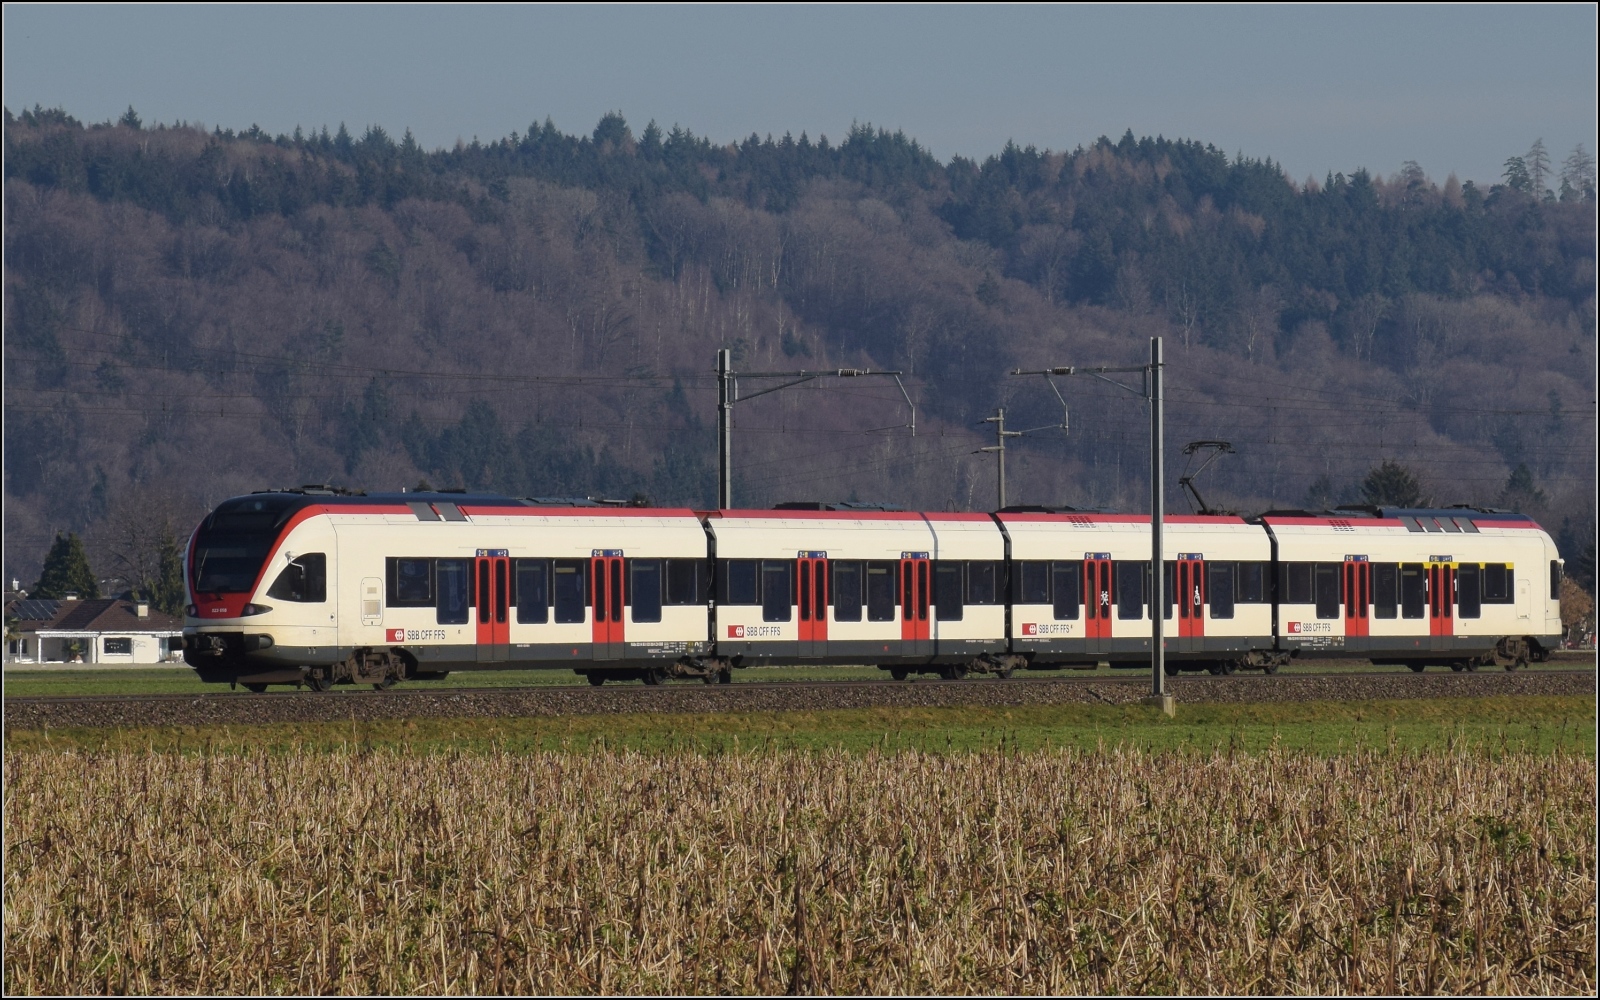 Am fast dauerverschlossenen Bahnübergang.

RABe 523 056 in Hendschiken. Februar 2023.